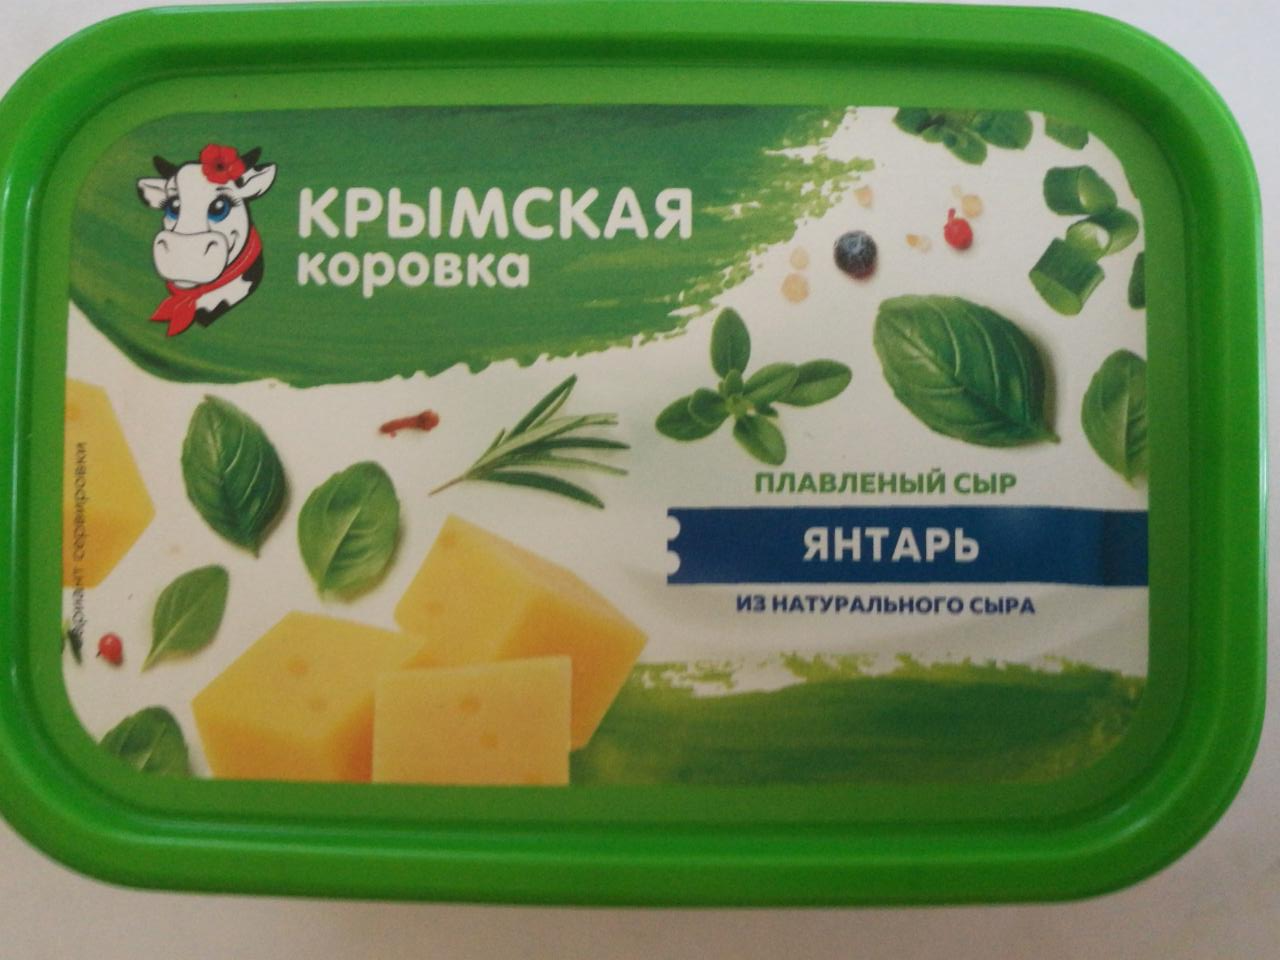 Фото - Плавленый сыр Янтарь Крымская коровка